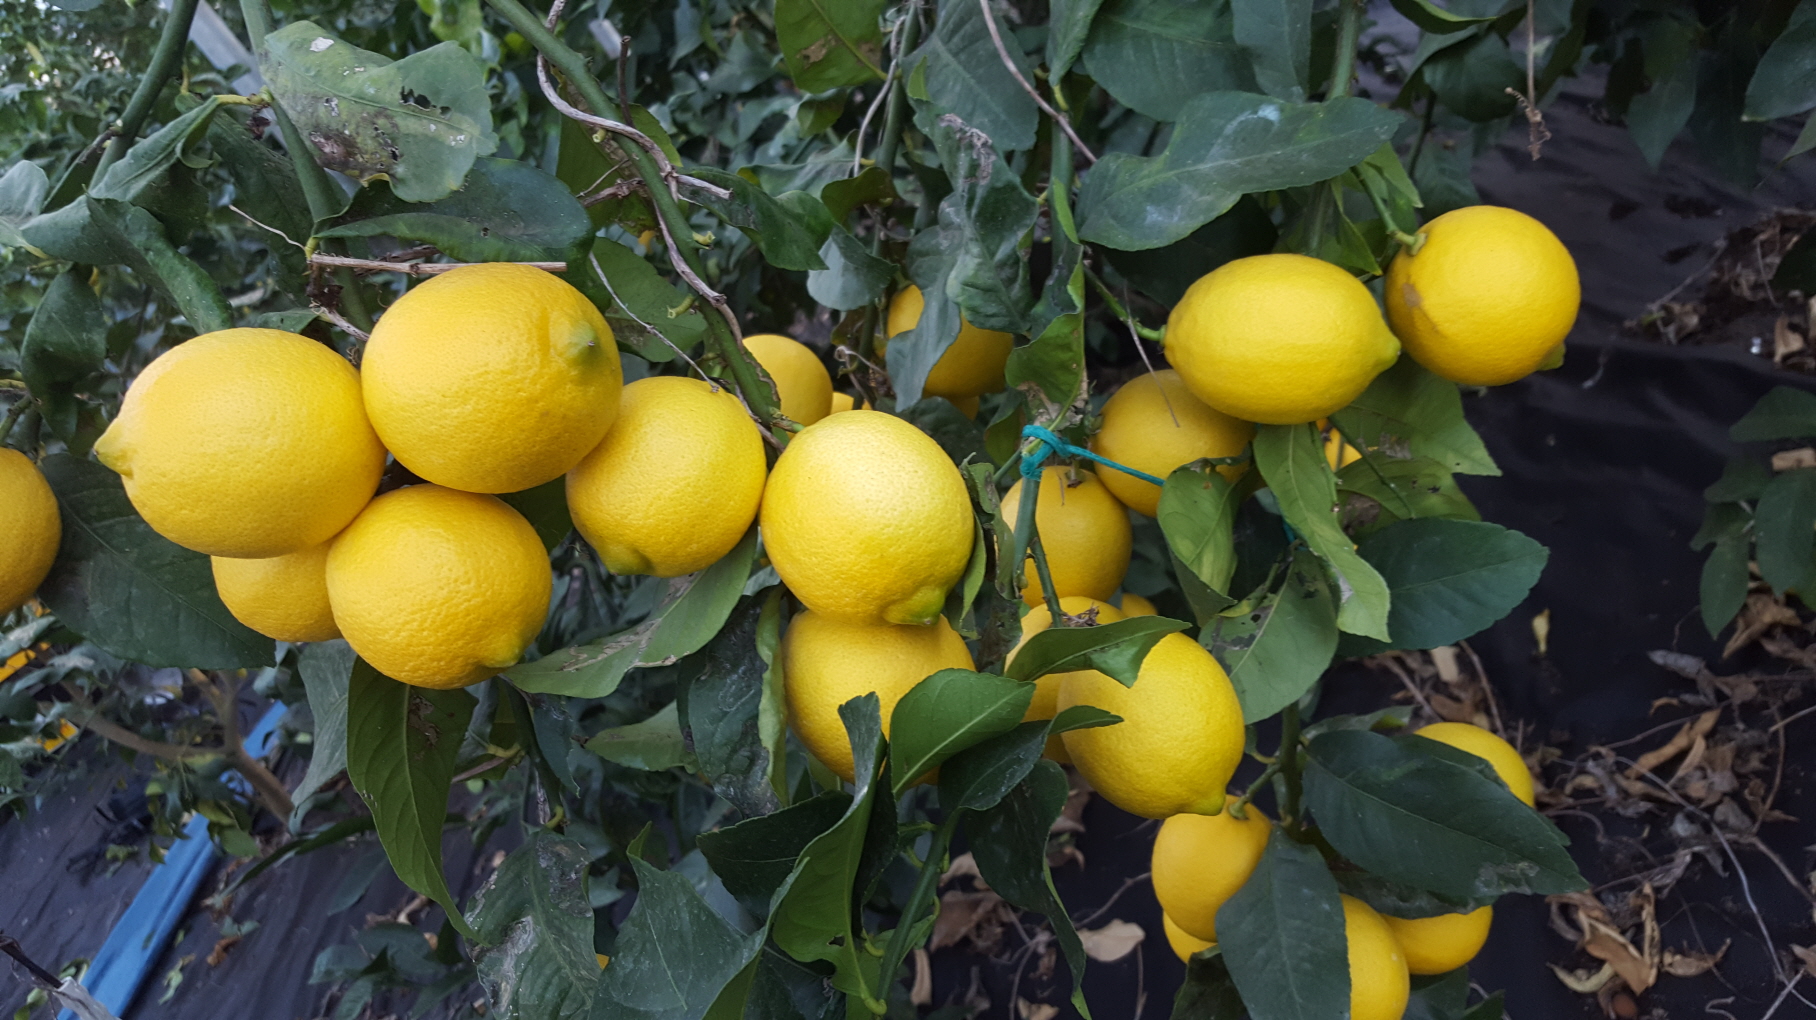 그린레몬 9kg - 무농약인증 레몬